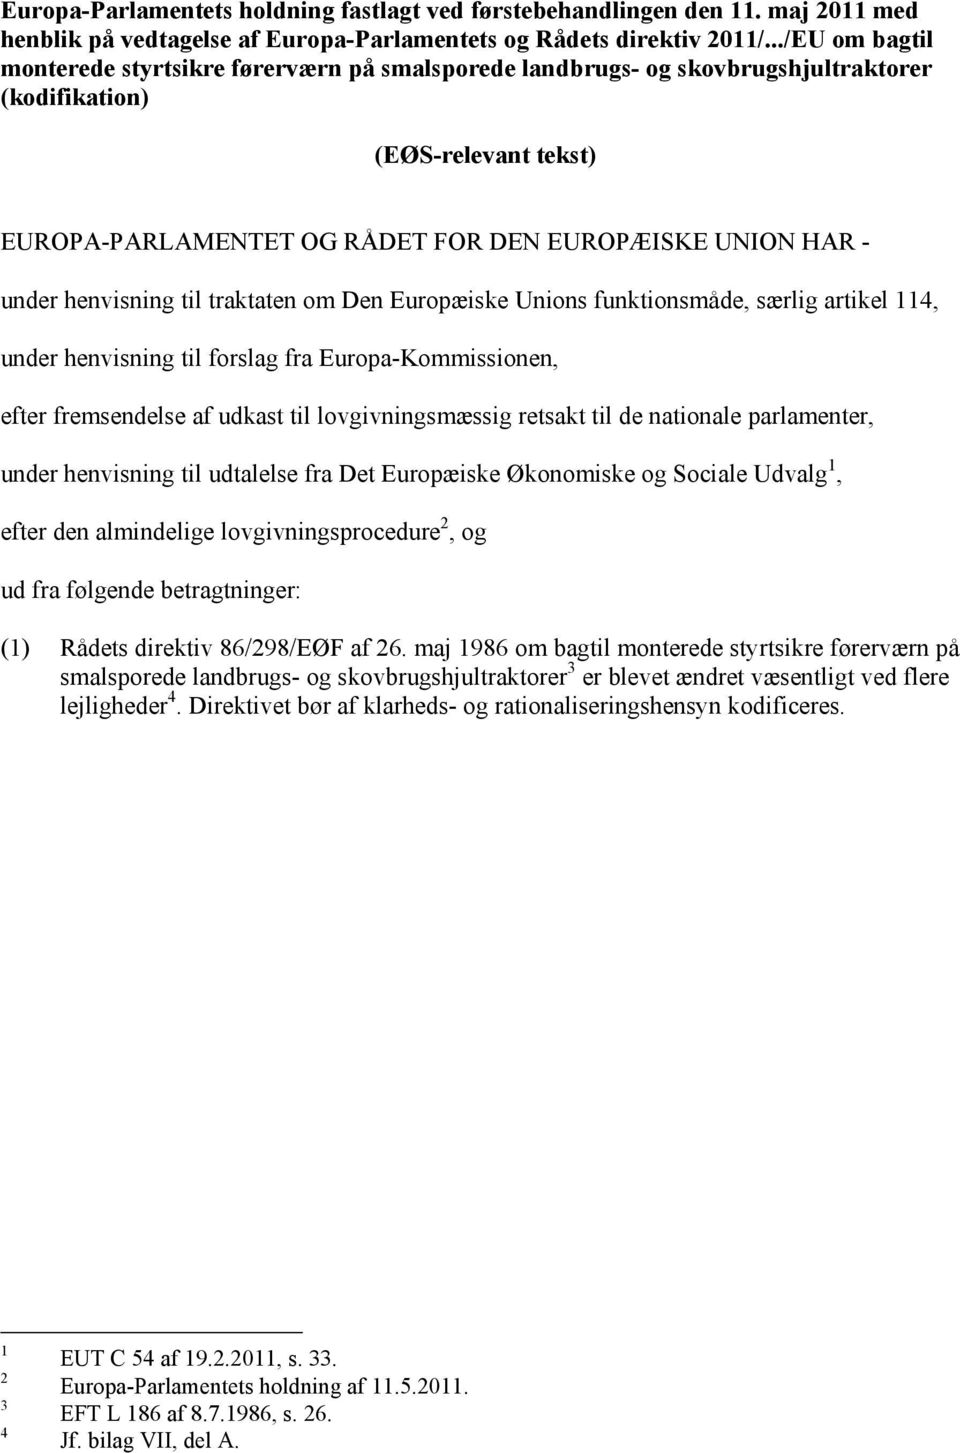 henvisning til traktaten om Den Europæiske Unions funktionsmåde, særlig artikel 114, under henvisning til forslag fra Europa-Kommissionen, efter fremsendelse af udkast til lovgivningsmæssig retsakt